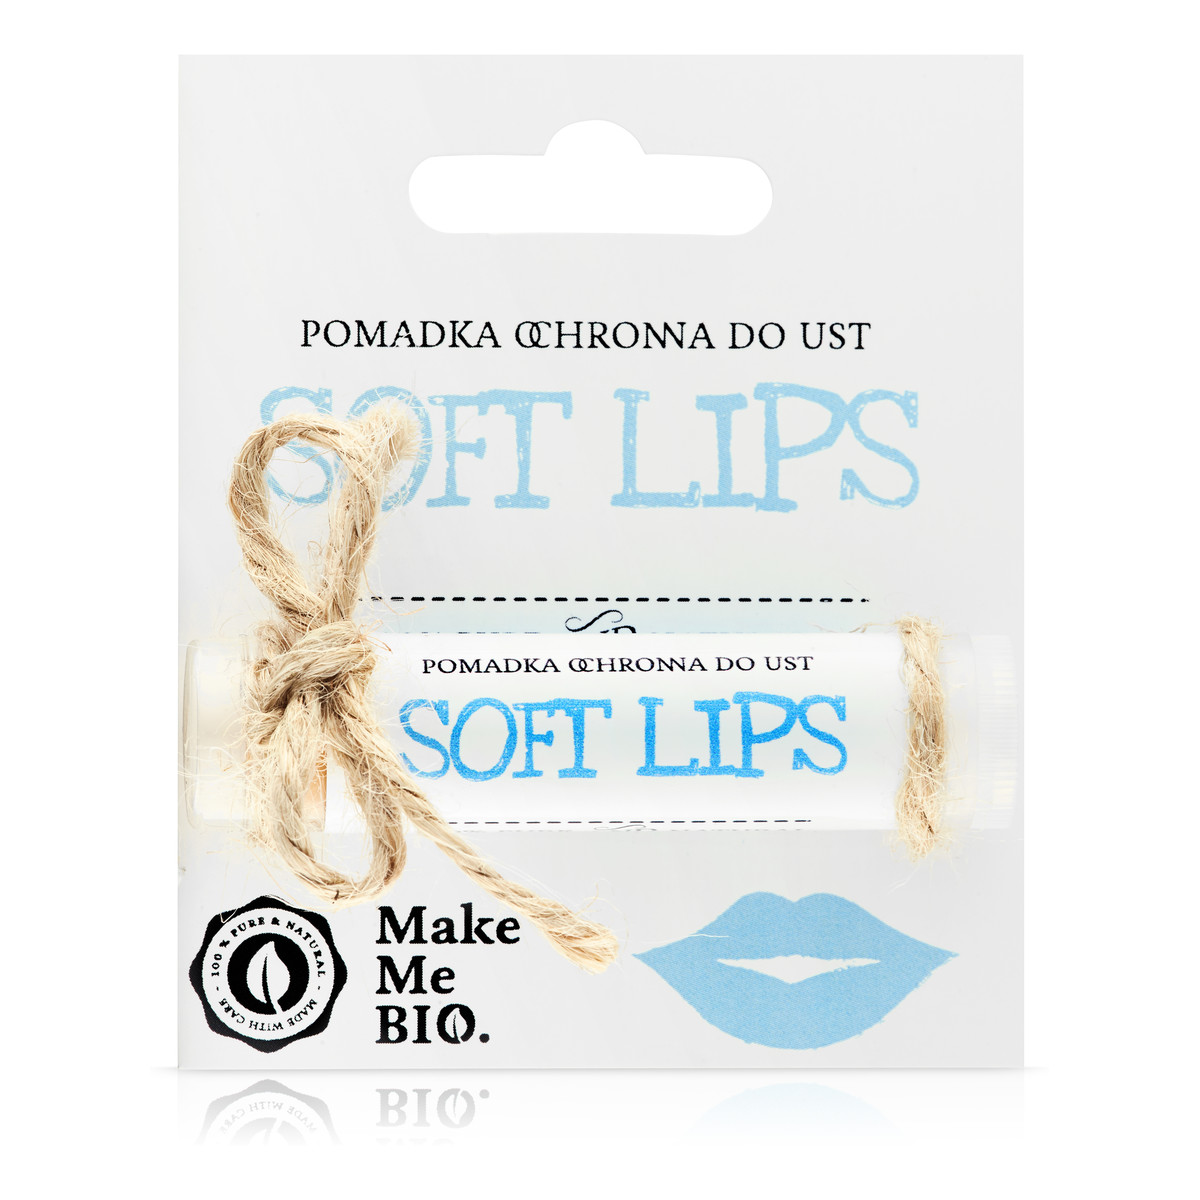 Make Me Bio Soft lips Pomadka ochronna do ust 5ml